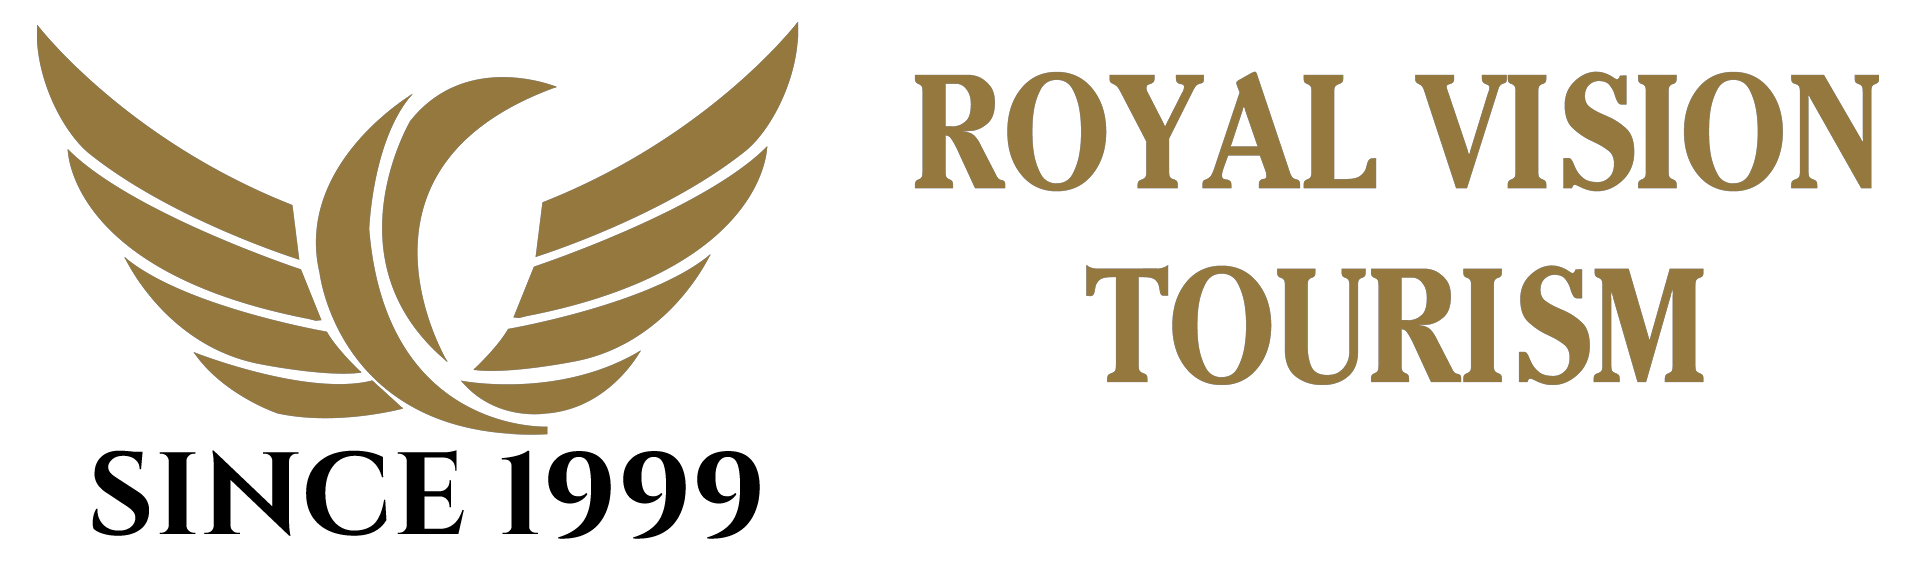 royal vision tourism services